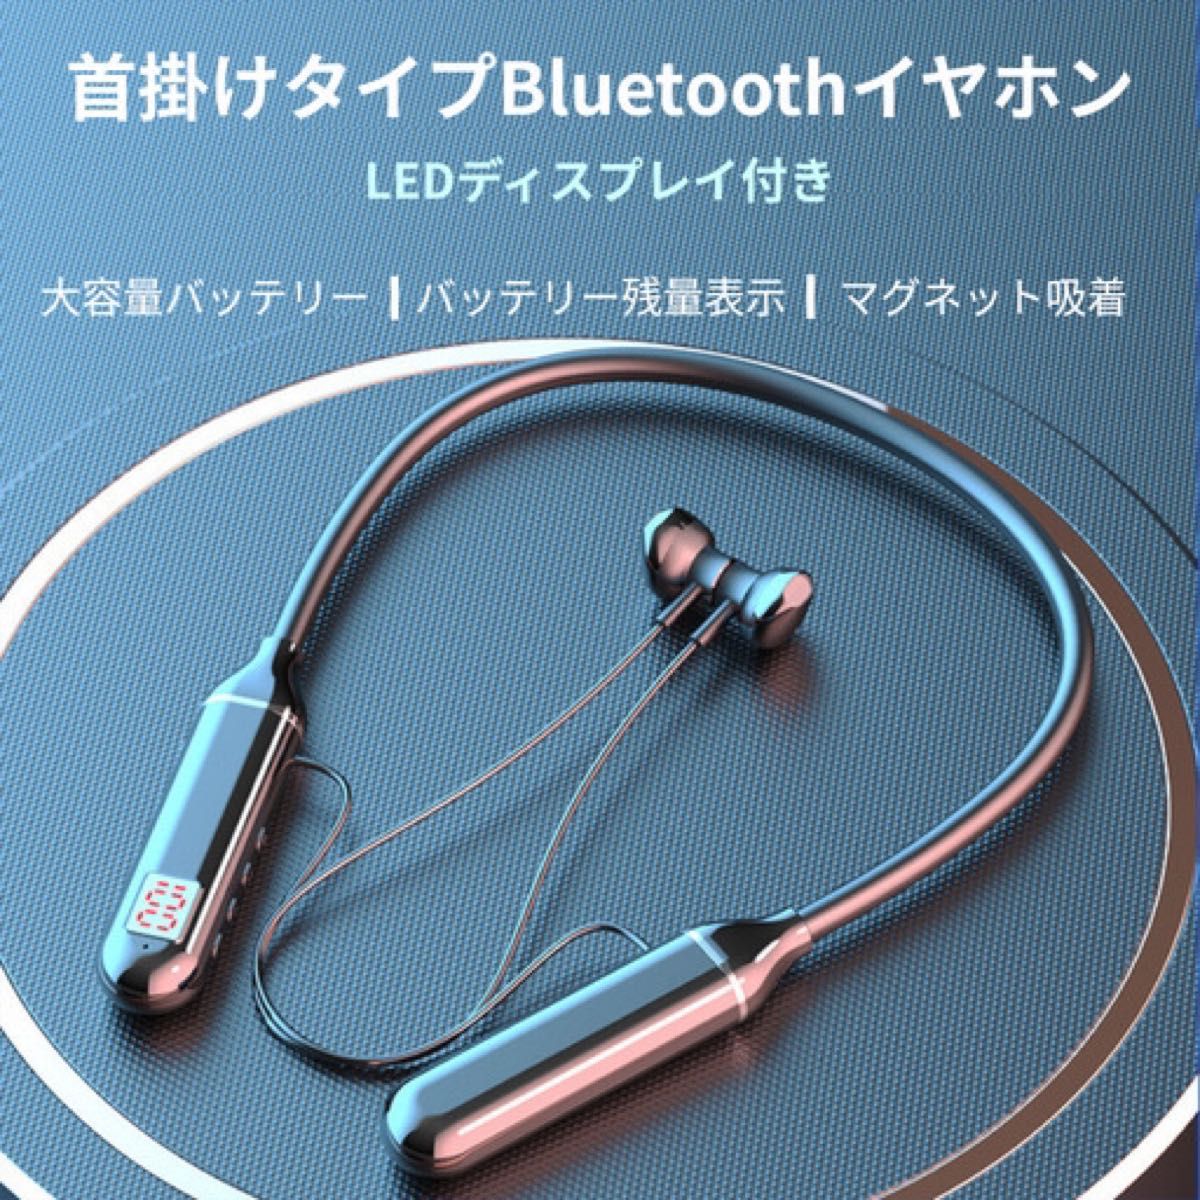 首掛け式イヤホン Bluetooth5.2 互換性 インナーイヤー型 残量表示 LED マグネット吸着タイプ 大容量新品未使用品